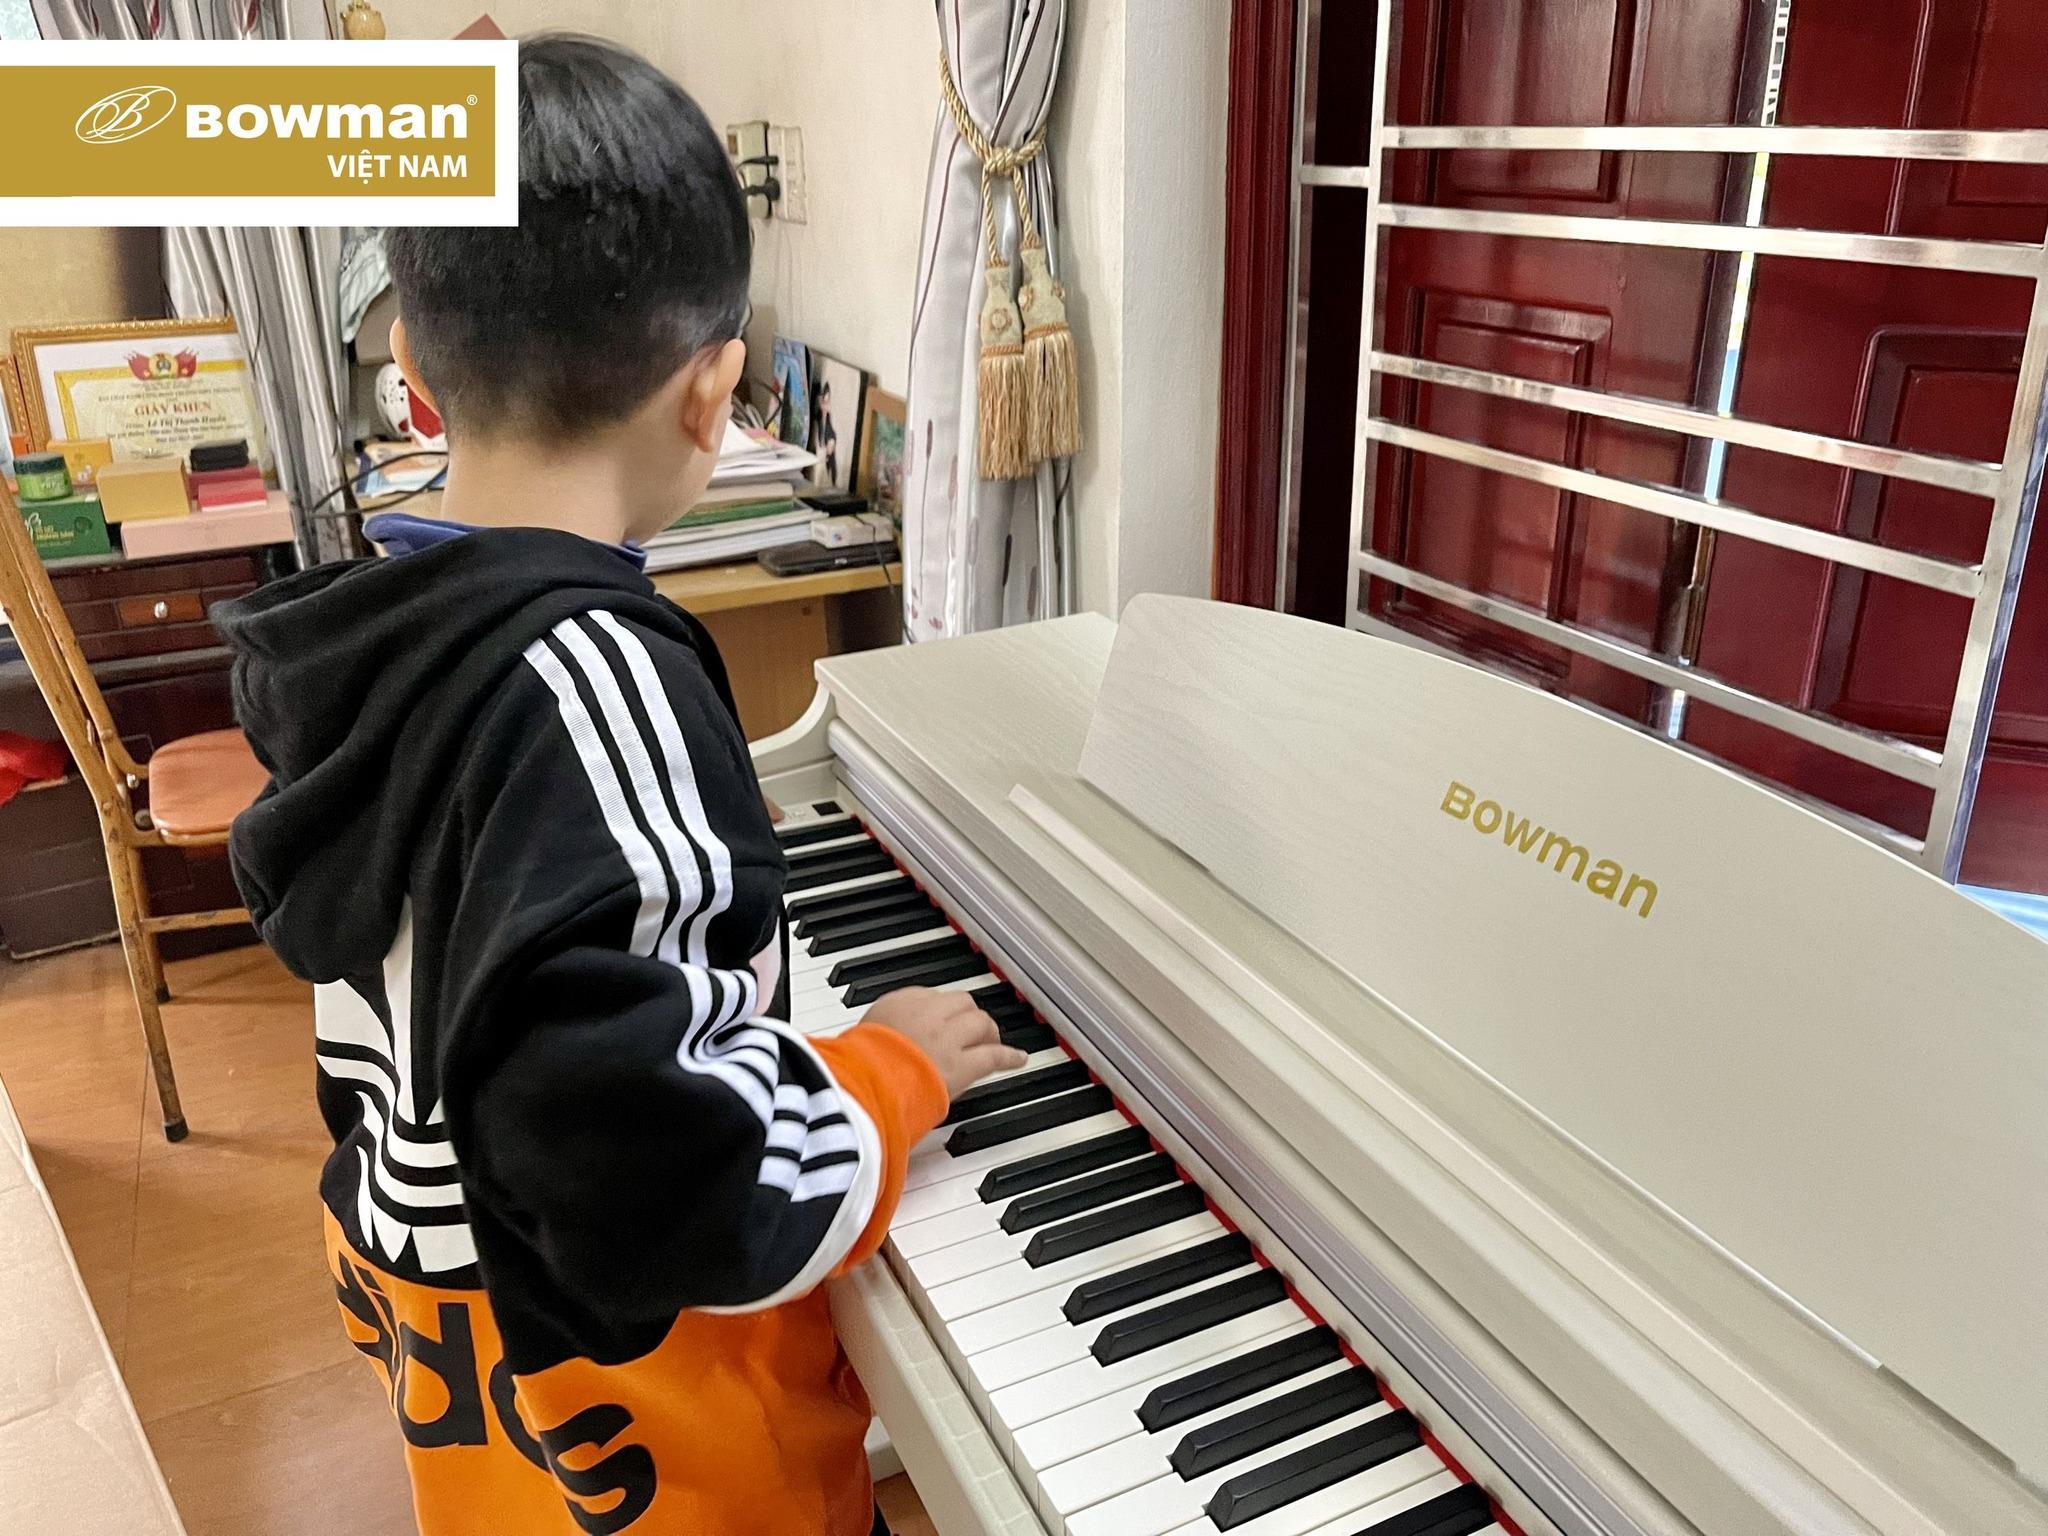 Lắp đặt piano BOWMAN CX230 cho bạn nhỏ đam mê